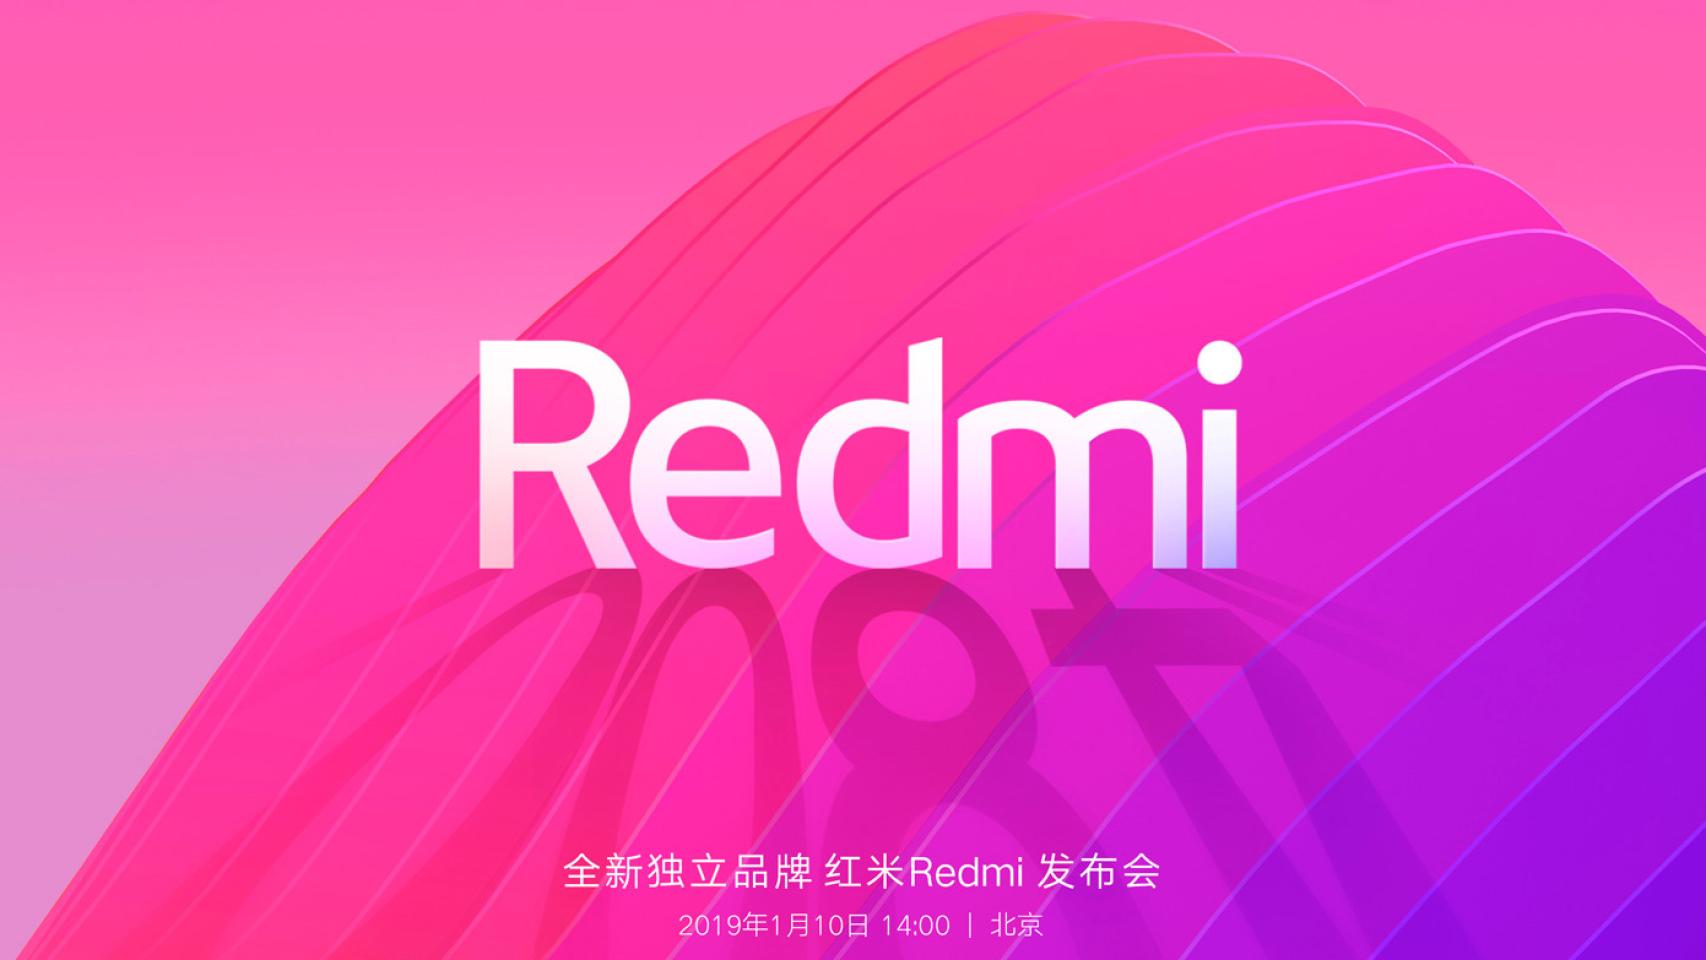 Xiaomi se divide: Los Redmi se convierten en marca independiente